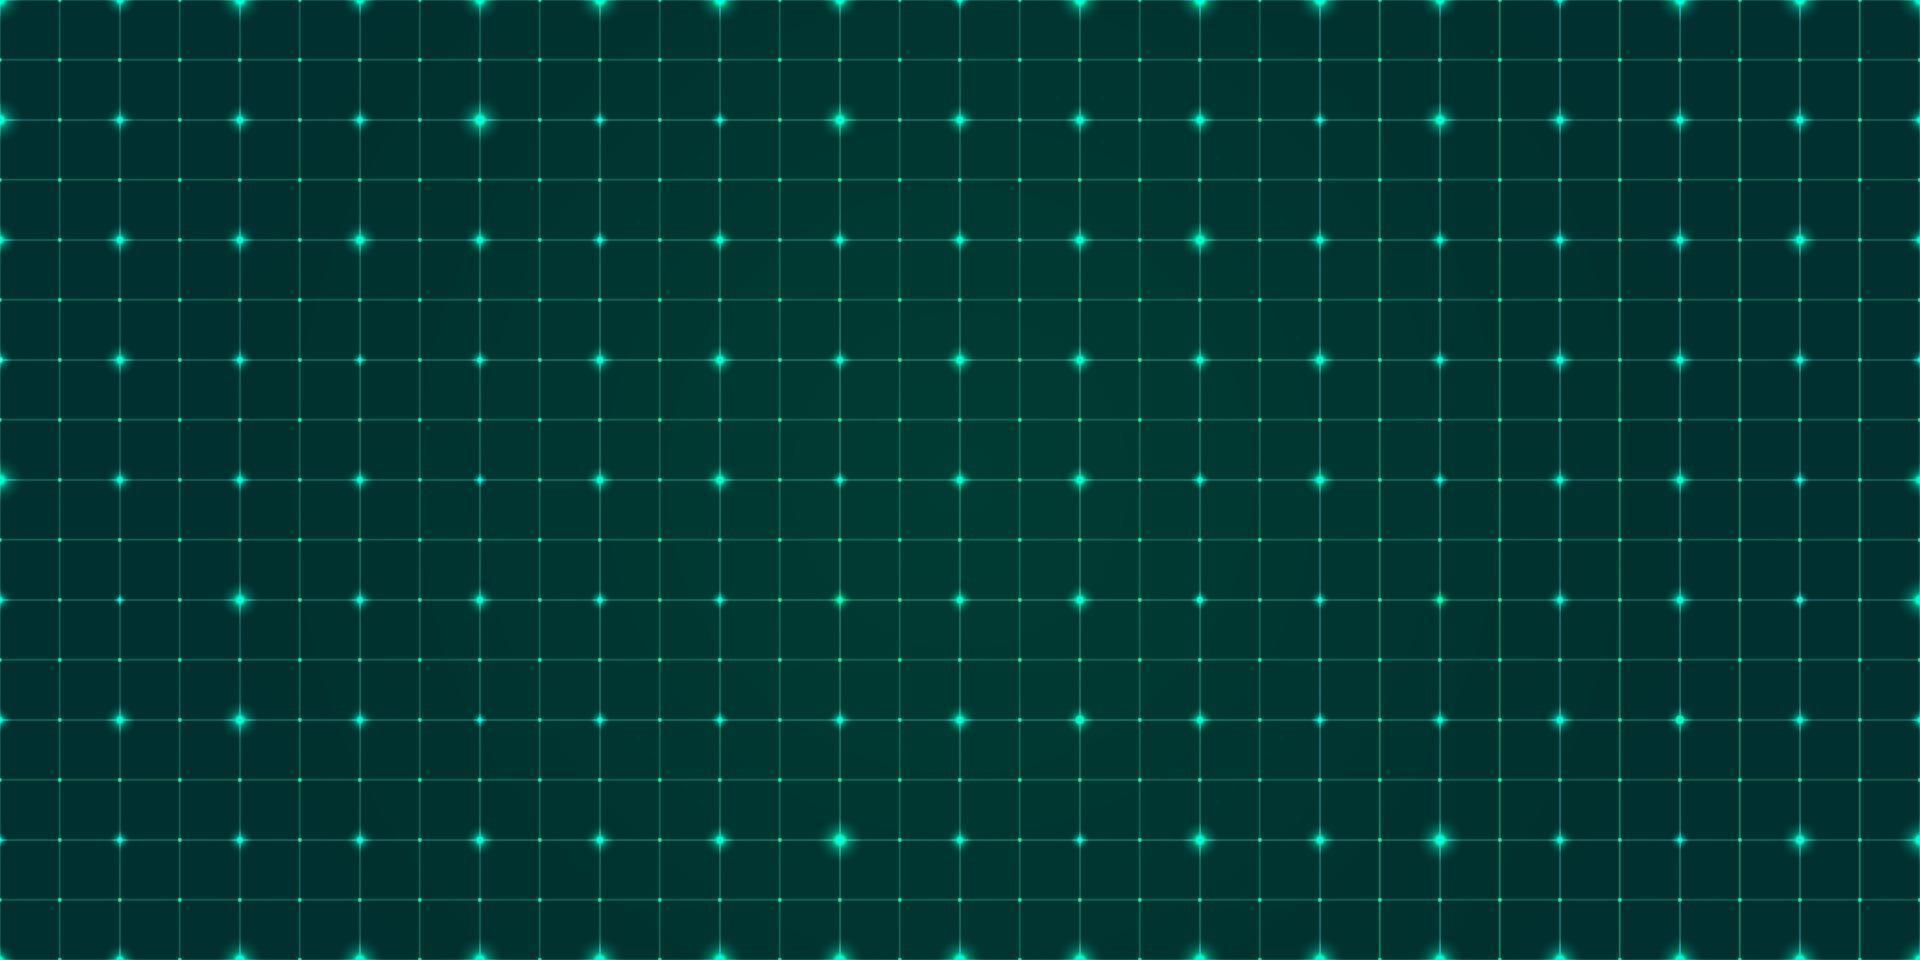 paisagem de armação de fio de vetor em fundo verde escuro. padrão geométrico abstrato. conectando pontos com linhas de laser. conceito futurista de tecnologia digital. ilustração eps10.